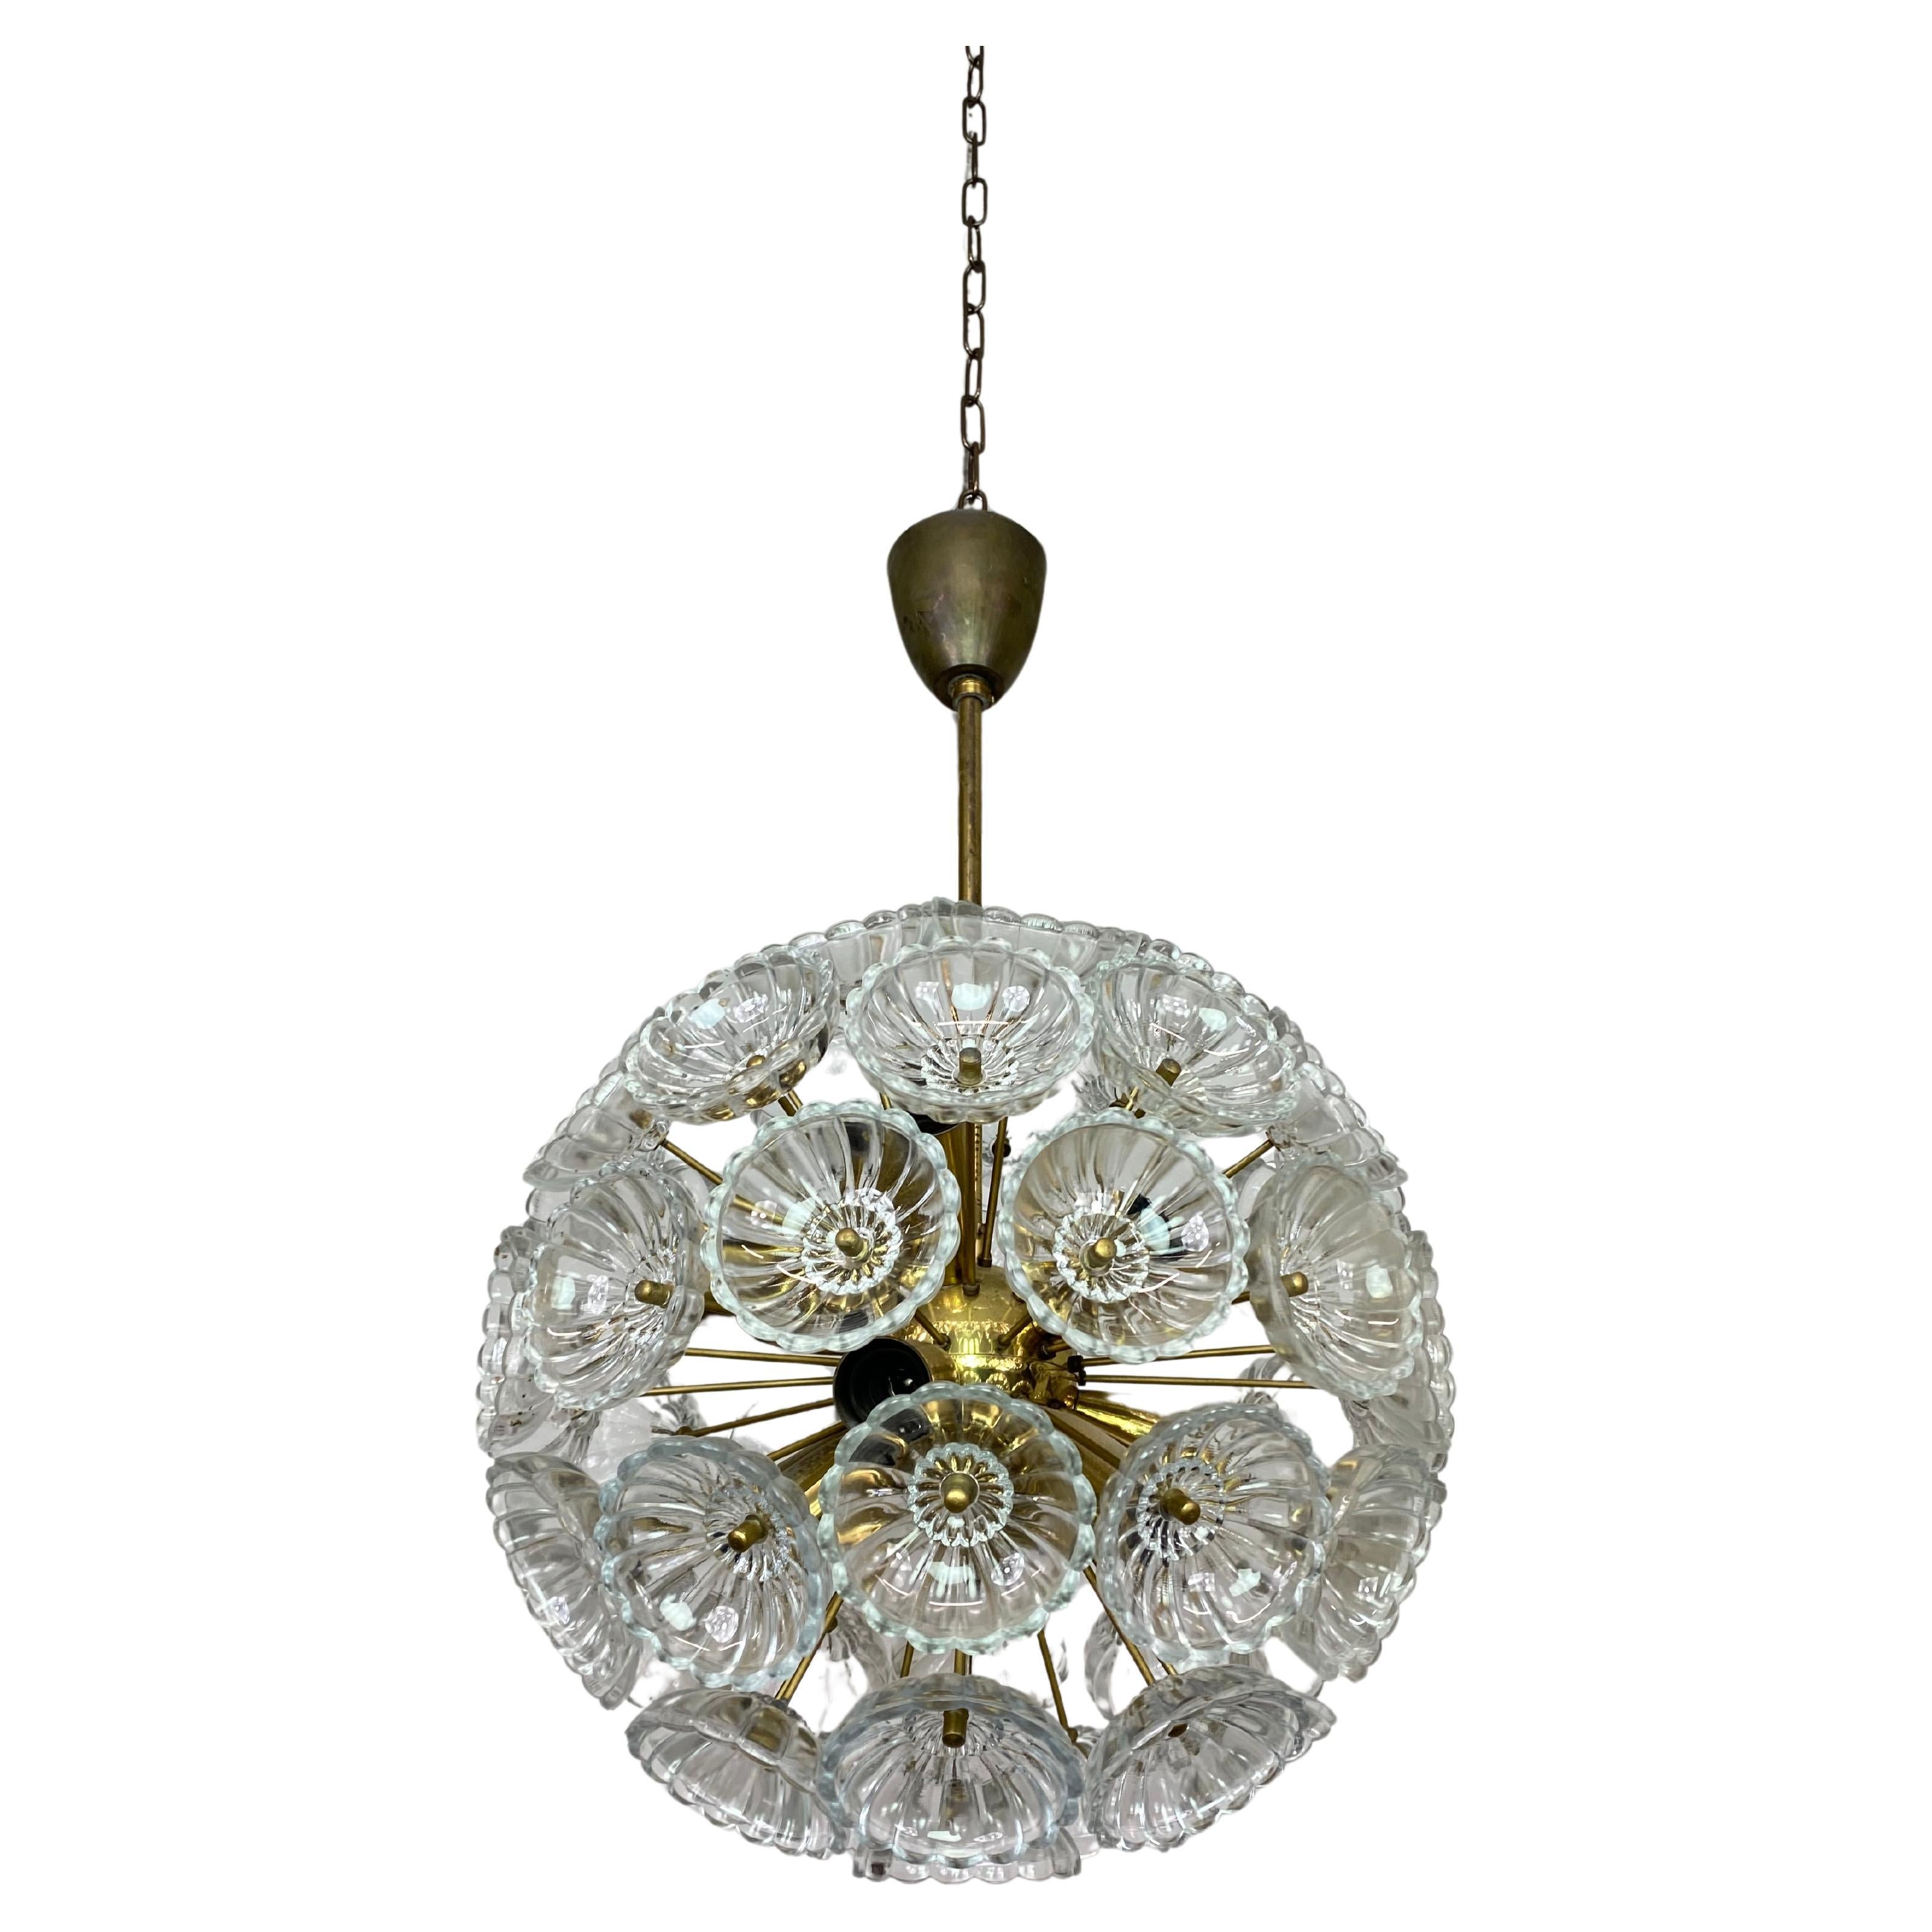 Dandelion chandelier by Kamenický Šenov